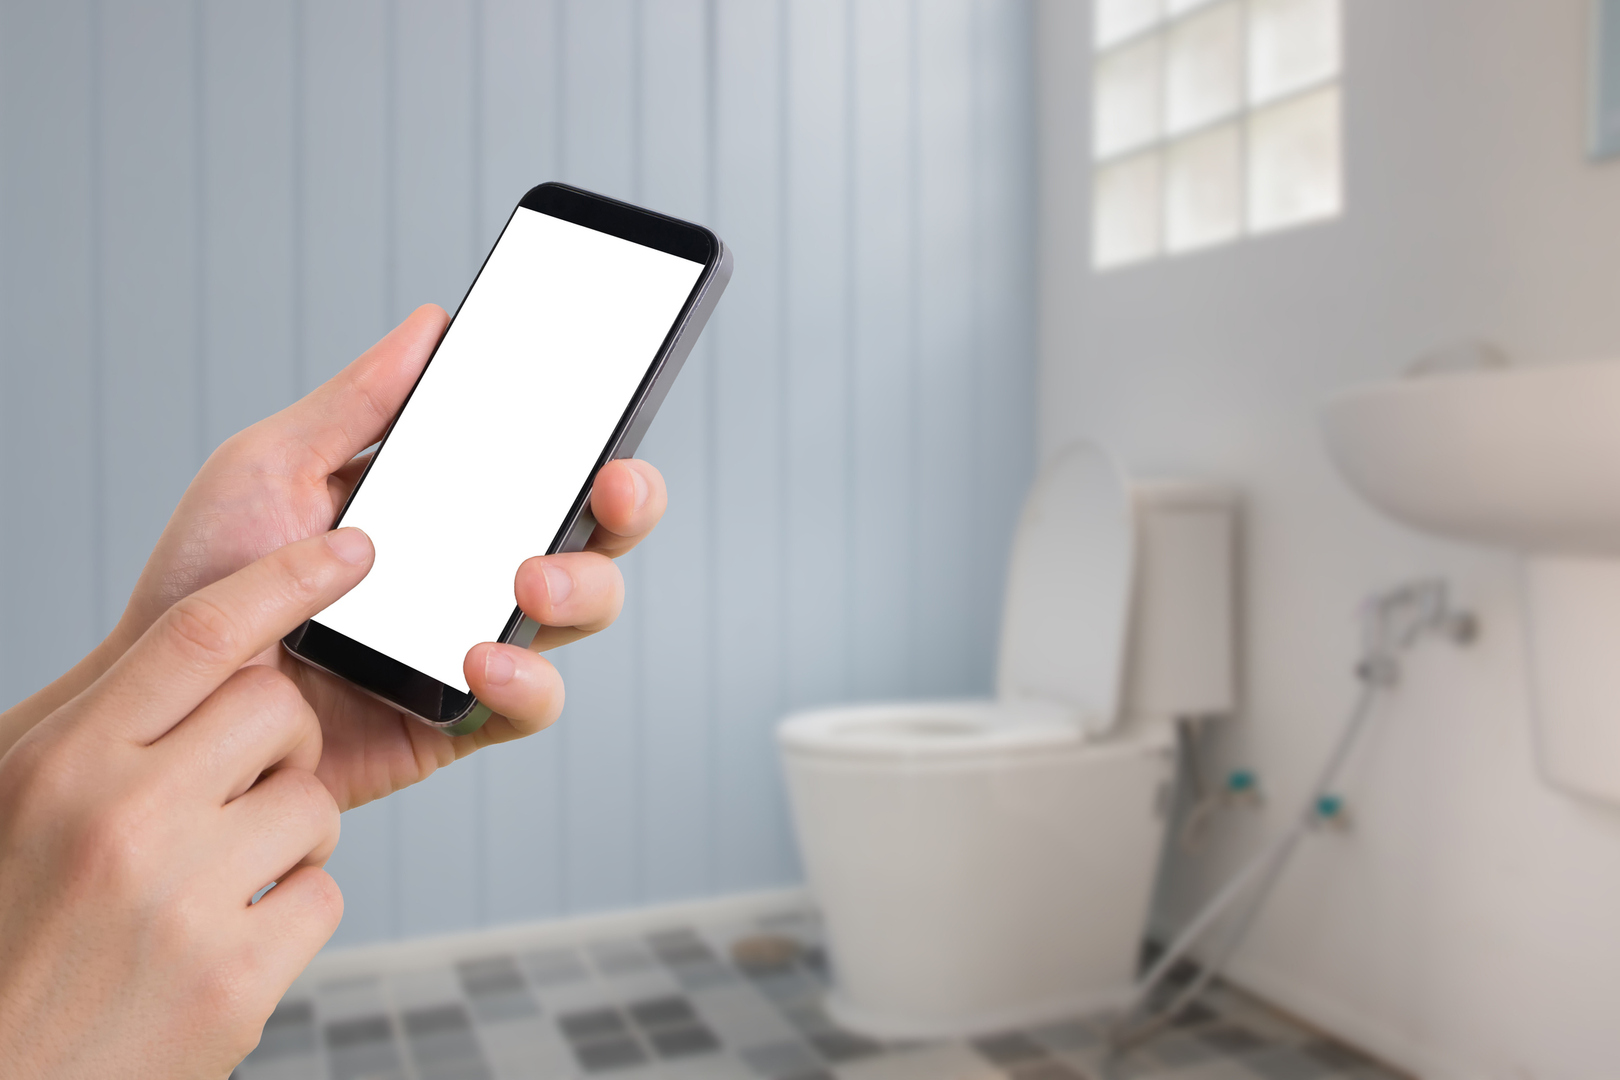 تحذيرات صارمة قد تدعوك للتوقف عن تصفح هاتفك في الحمام؟